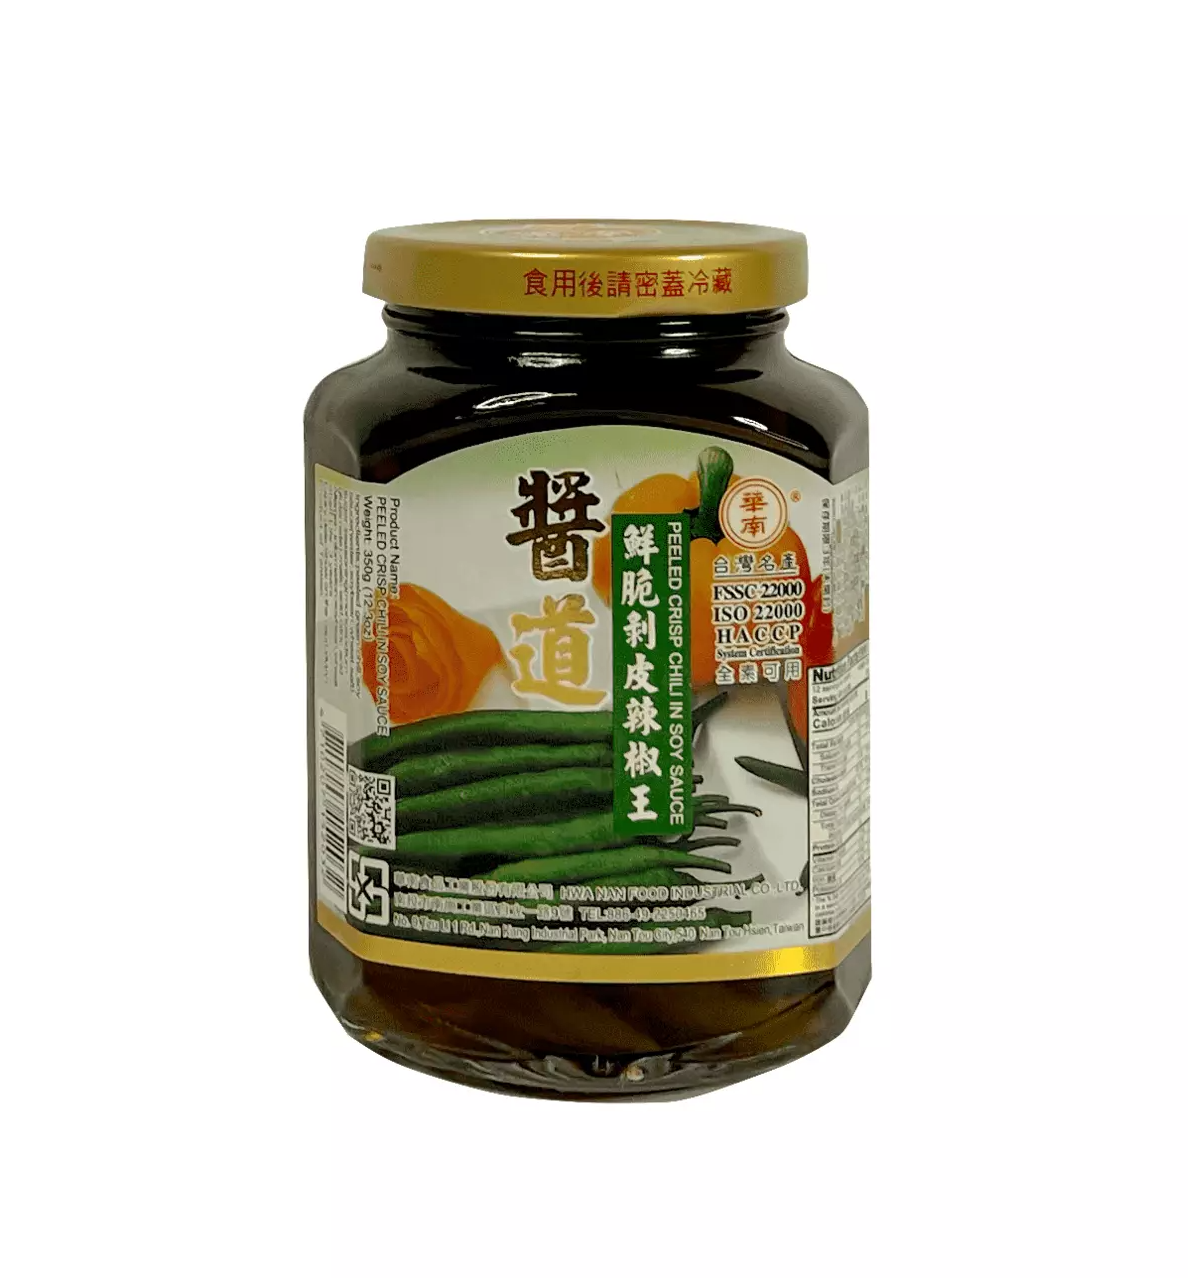 Peeled Crisp Chili I Soy Sauce 350g Bao Pi La Jiao Wang Huanan Taiwan